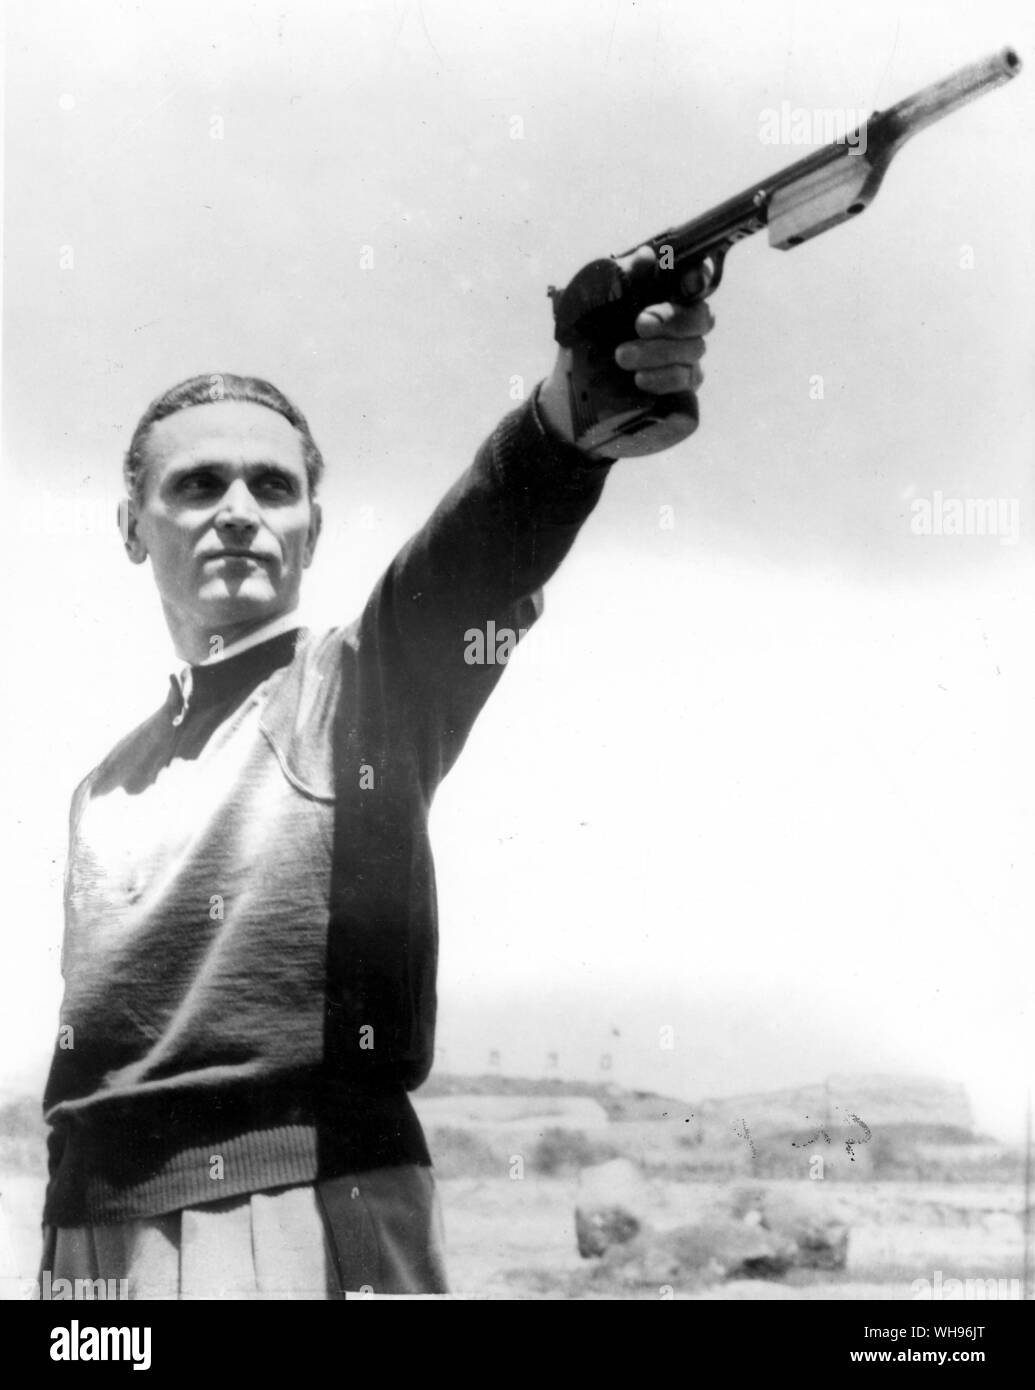 Aus., Melbourne, Olimpiadi, 1956: Karoly Takacs di Ungheria, vincitore della Olympic silhouette evento nel 1948 e 1952, visto qui in azione durante l'evento 1956. Ha perso il suo braccio nella guerra mondiale 2 e ora spara mancino.. Foto Stock